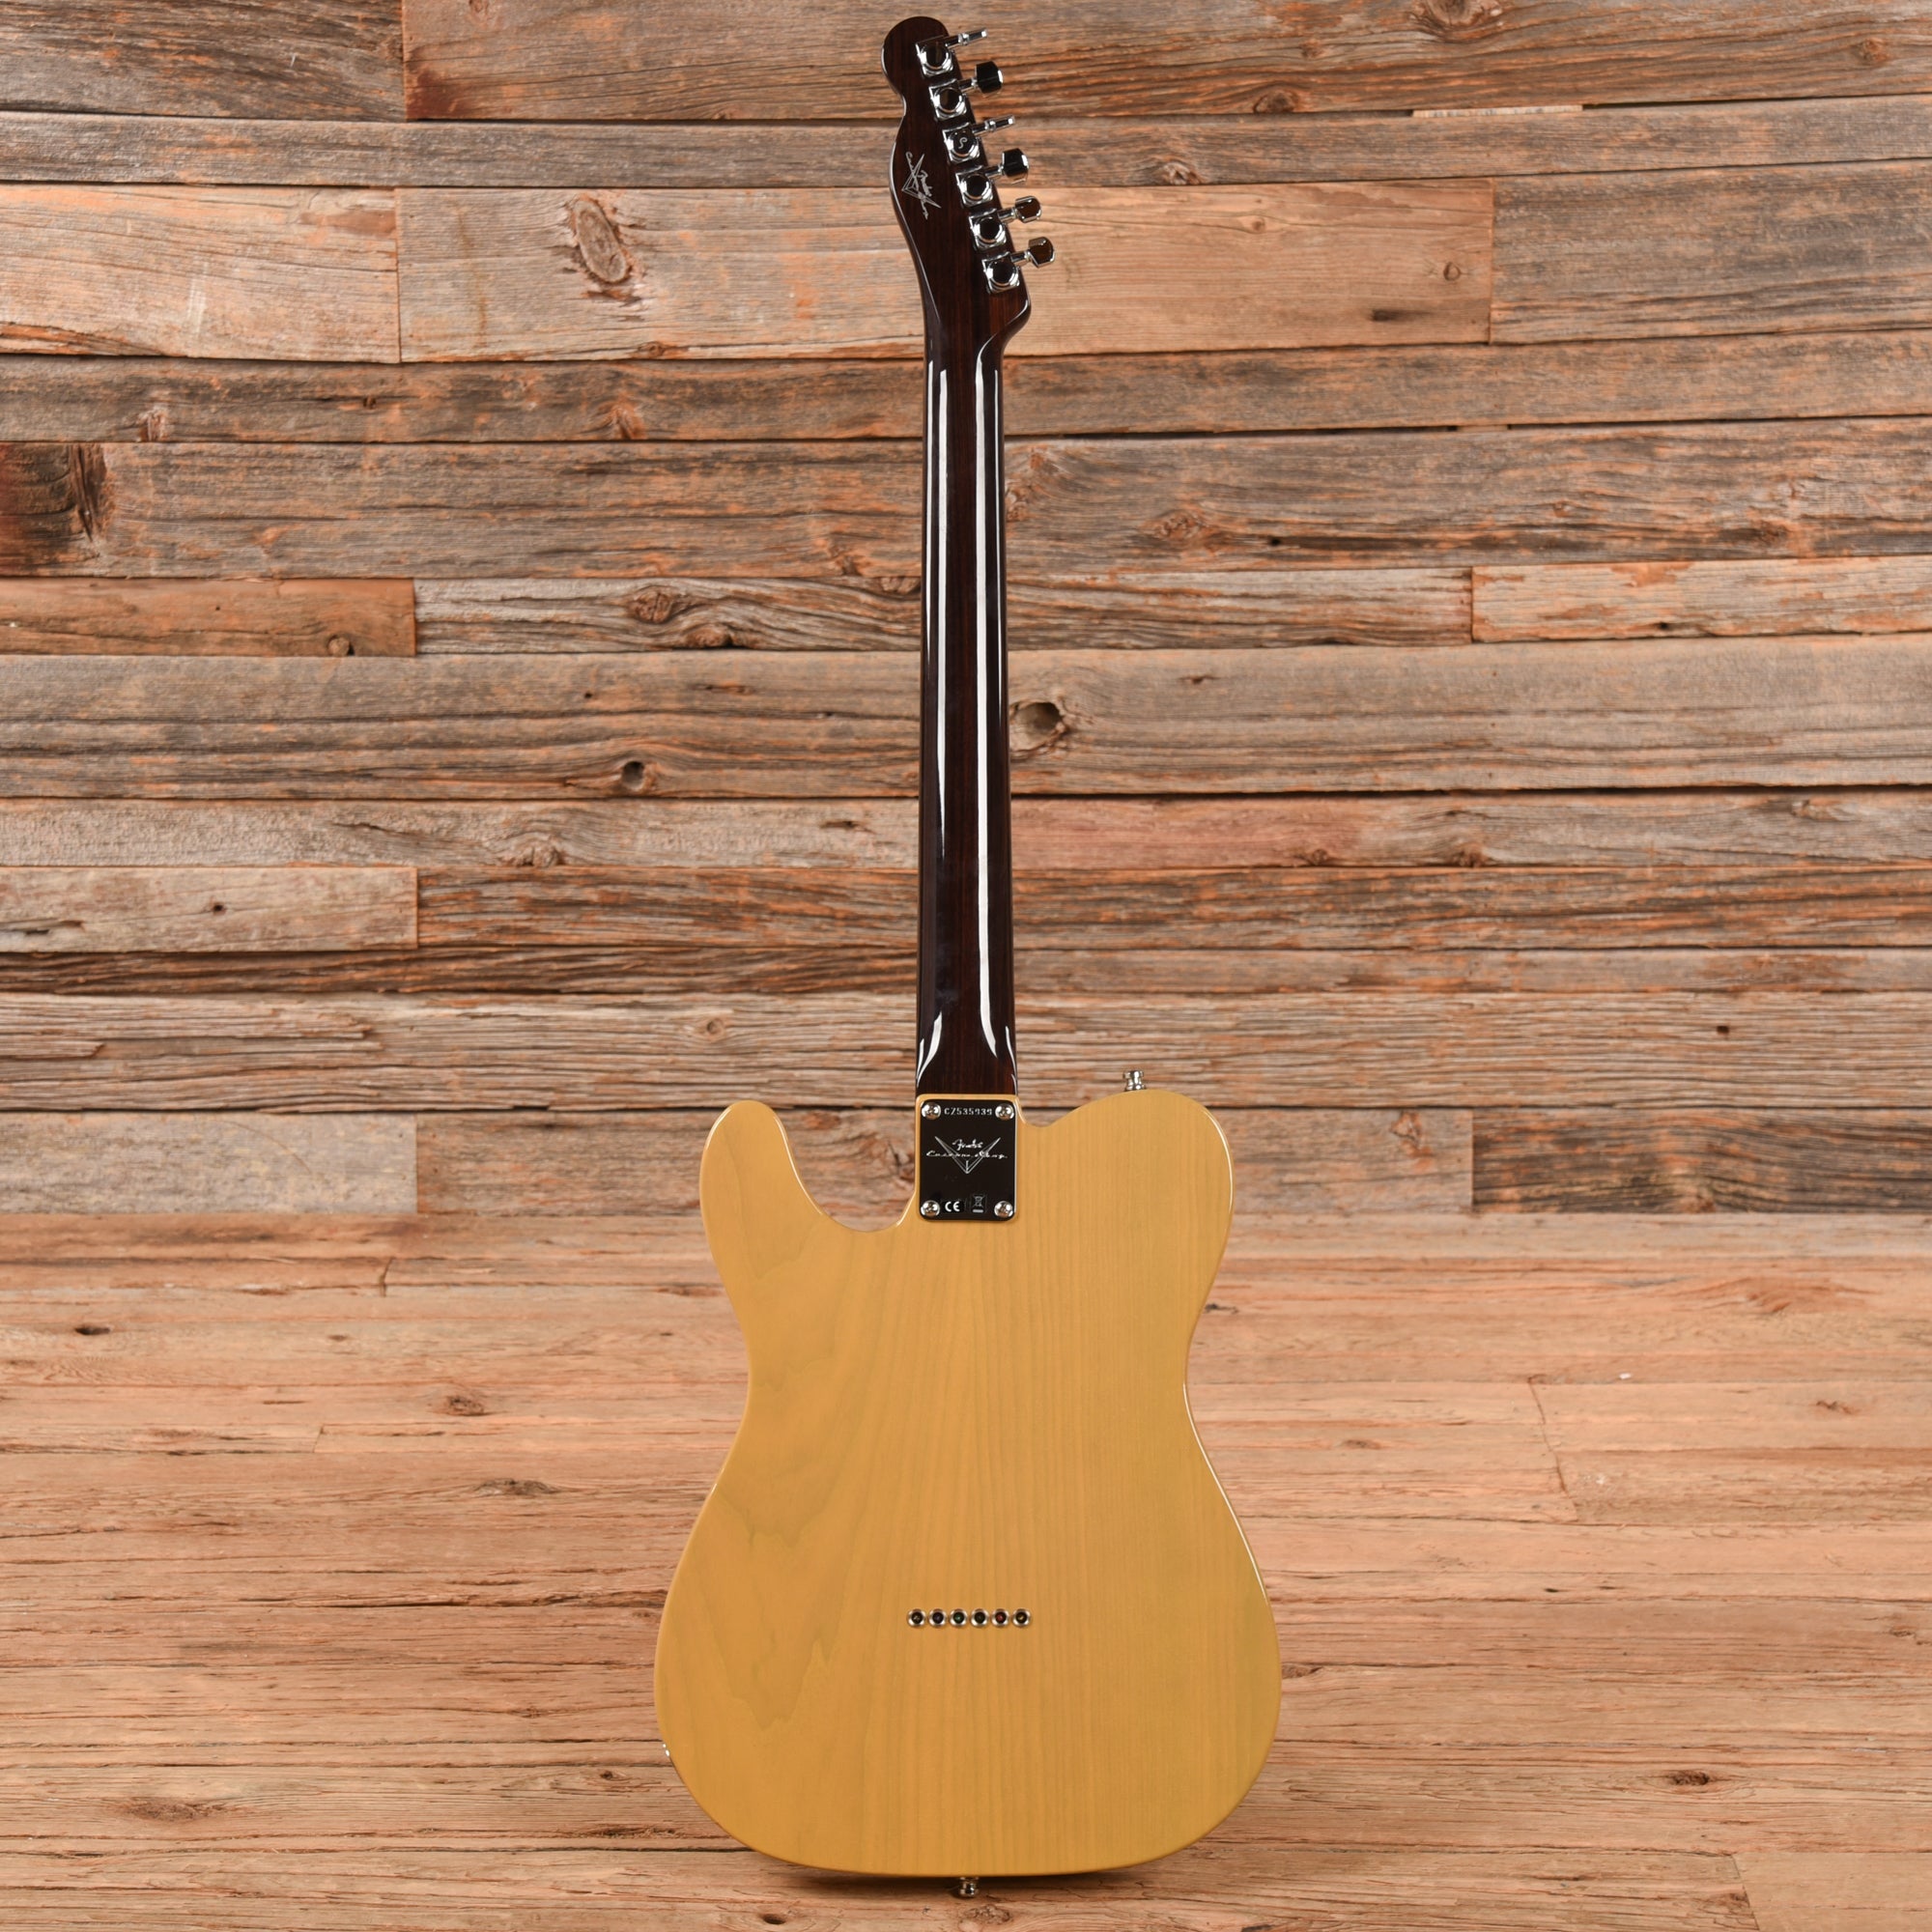 Fender Custom Shop Post Modern Telecaster w/Rosewood Neck Closet Classic Butterscotch Blonde 2018